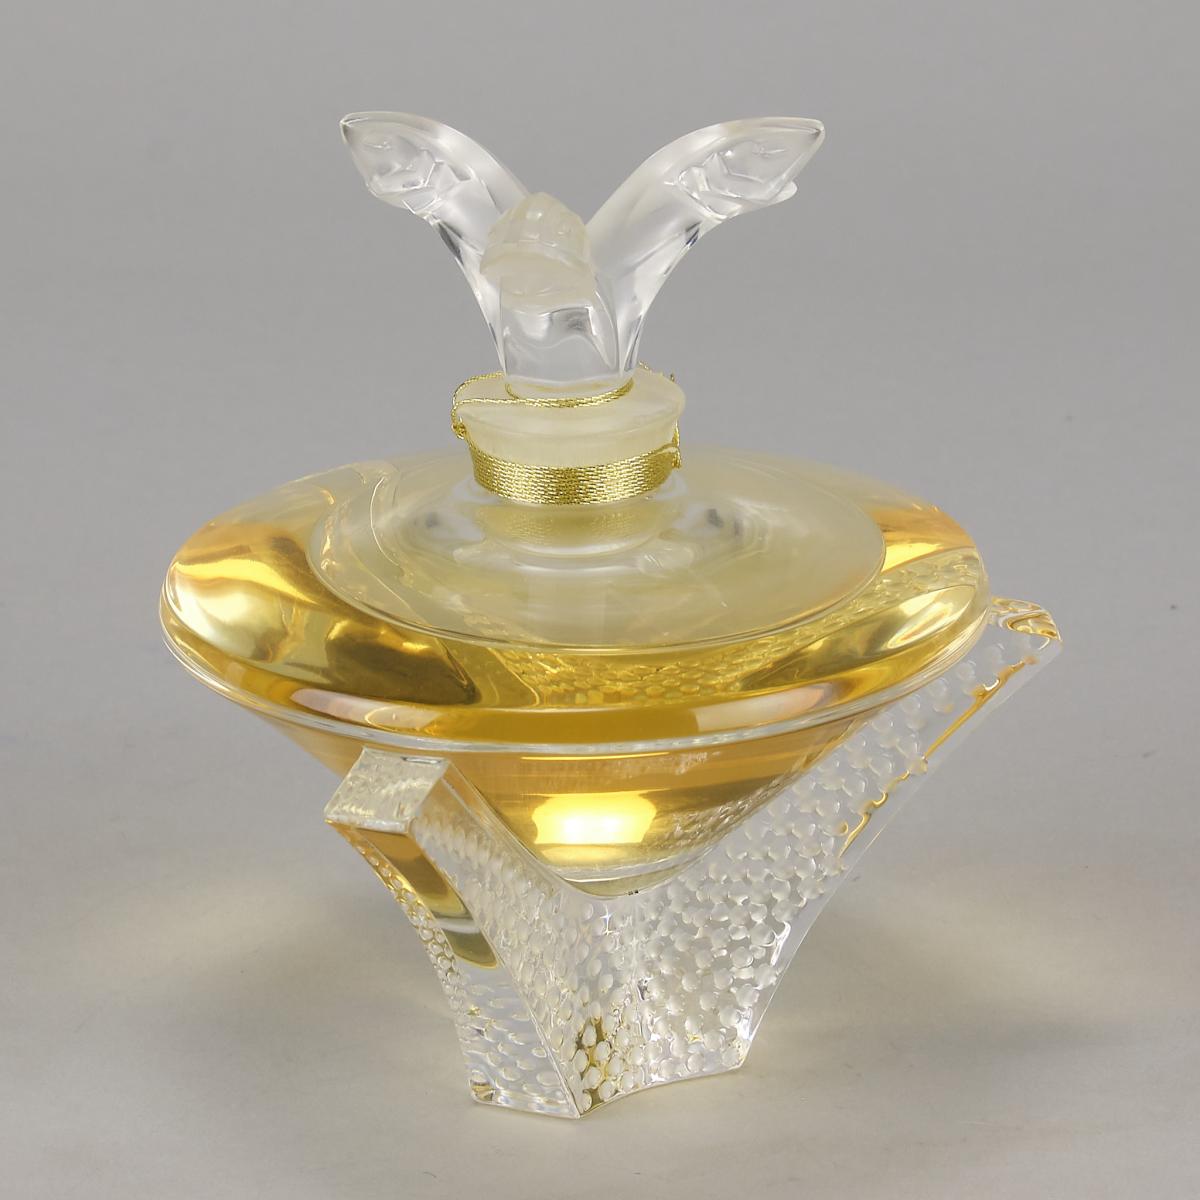 Contemporary Lalique Scent Bottle entitled "Cascade" by Marie-Claude Lalique